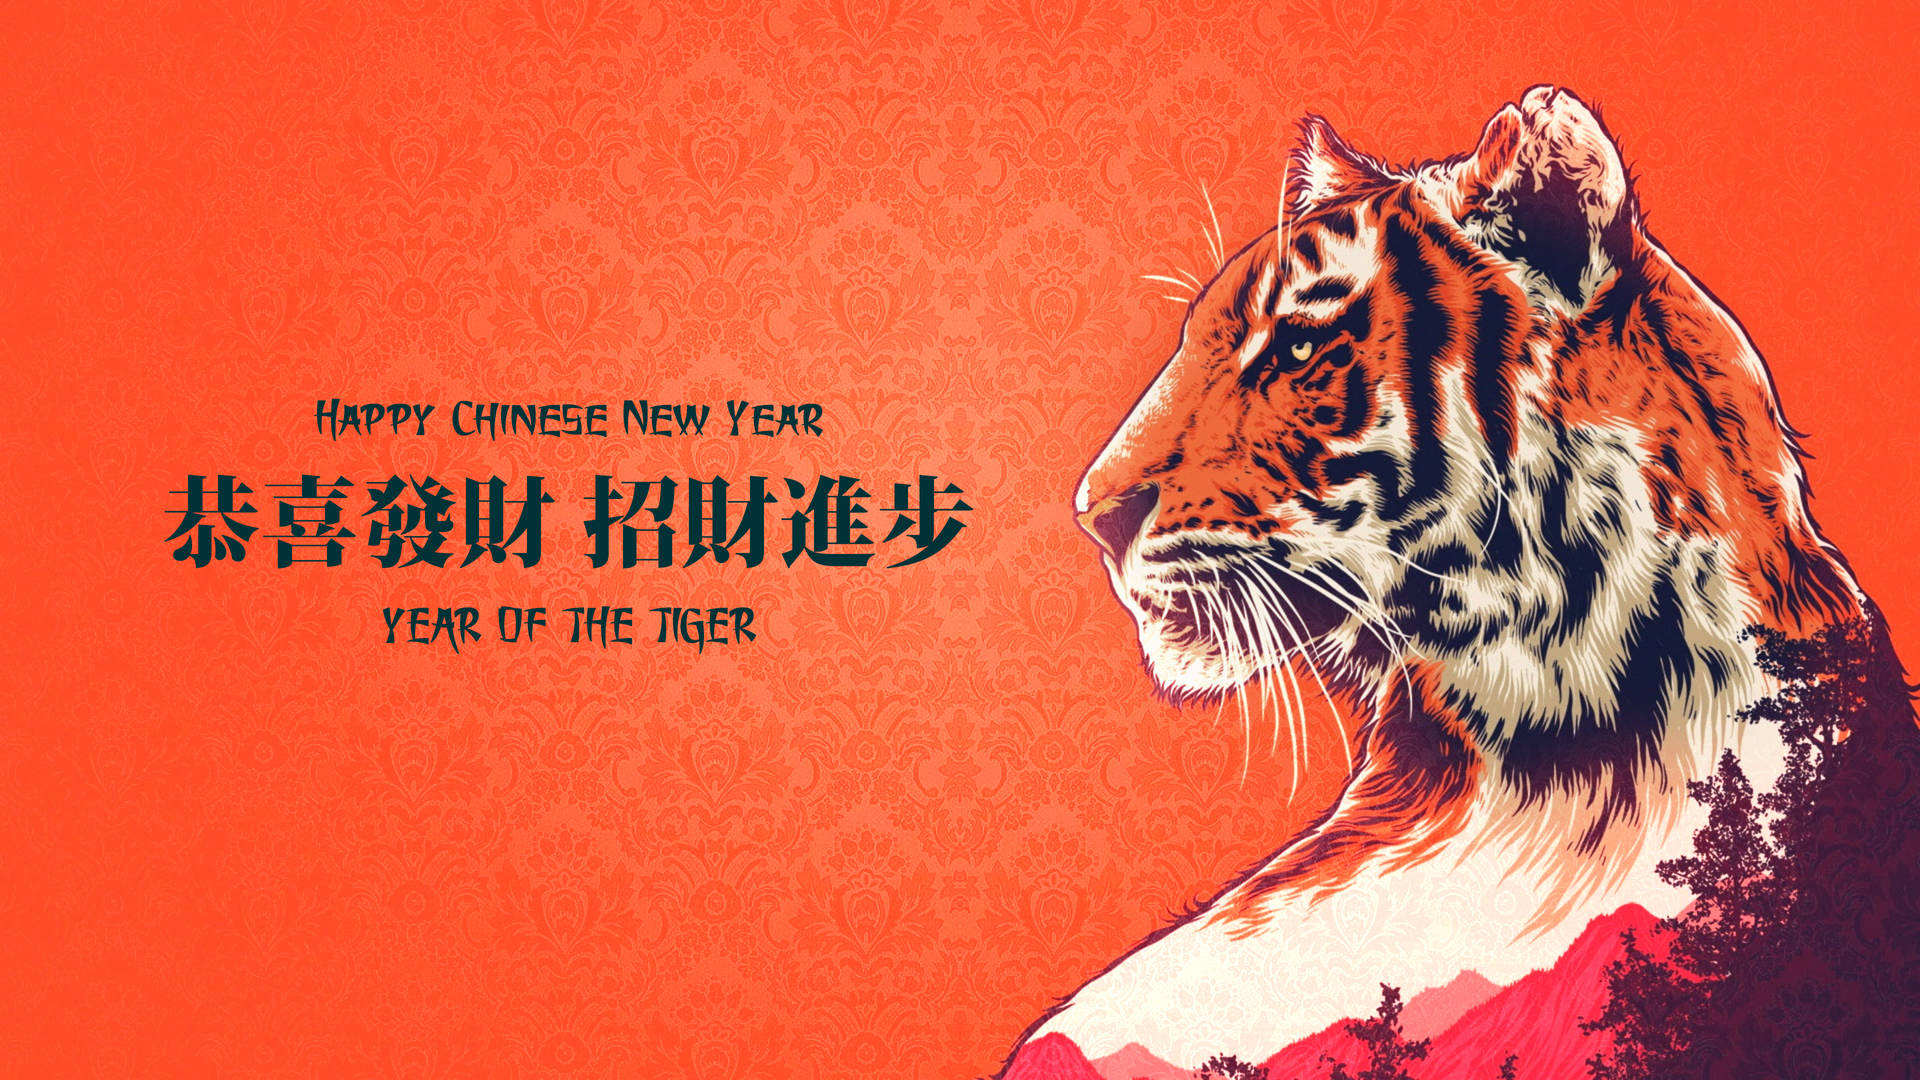 Fondos De Año Nuevo Chino